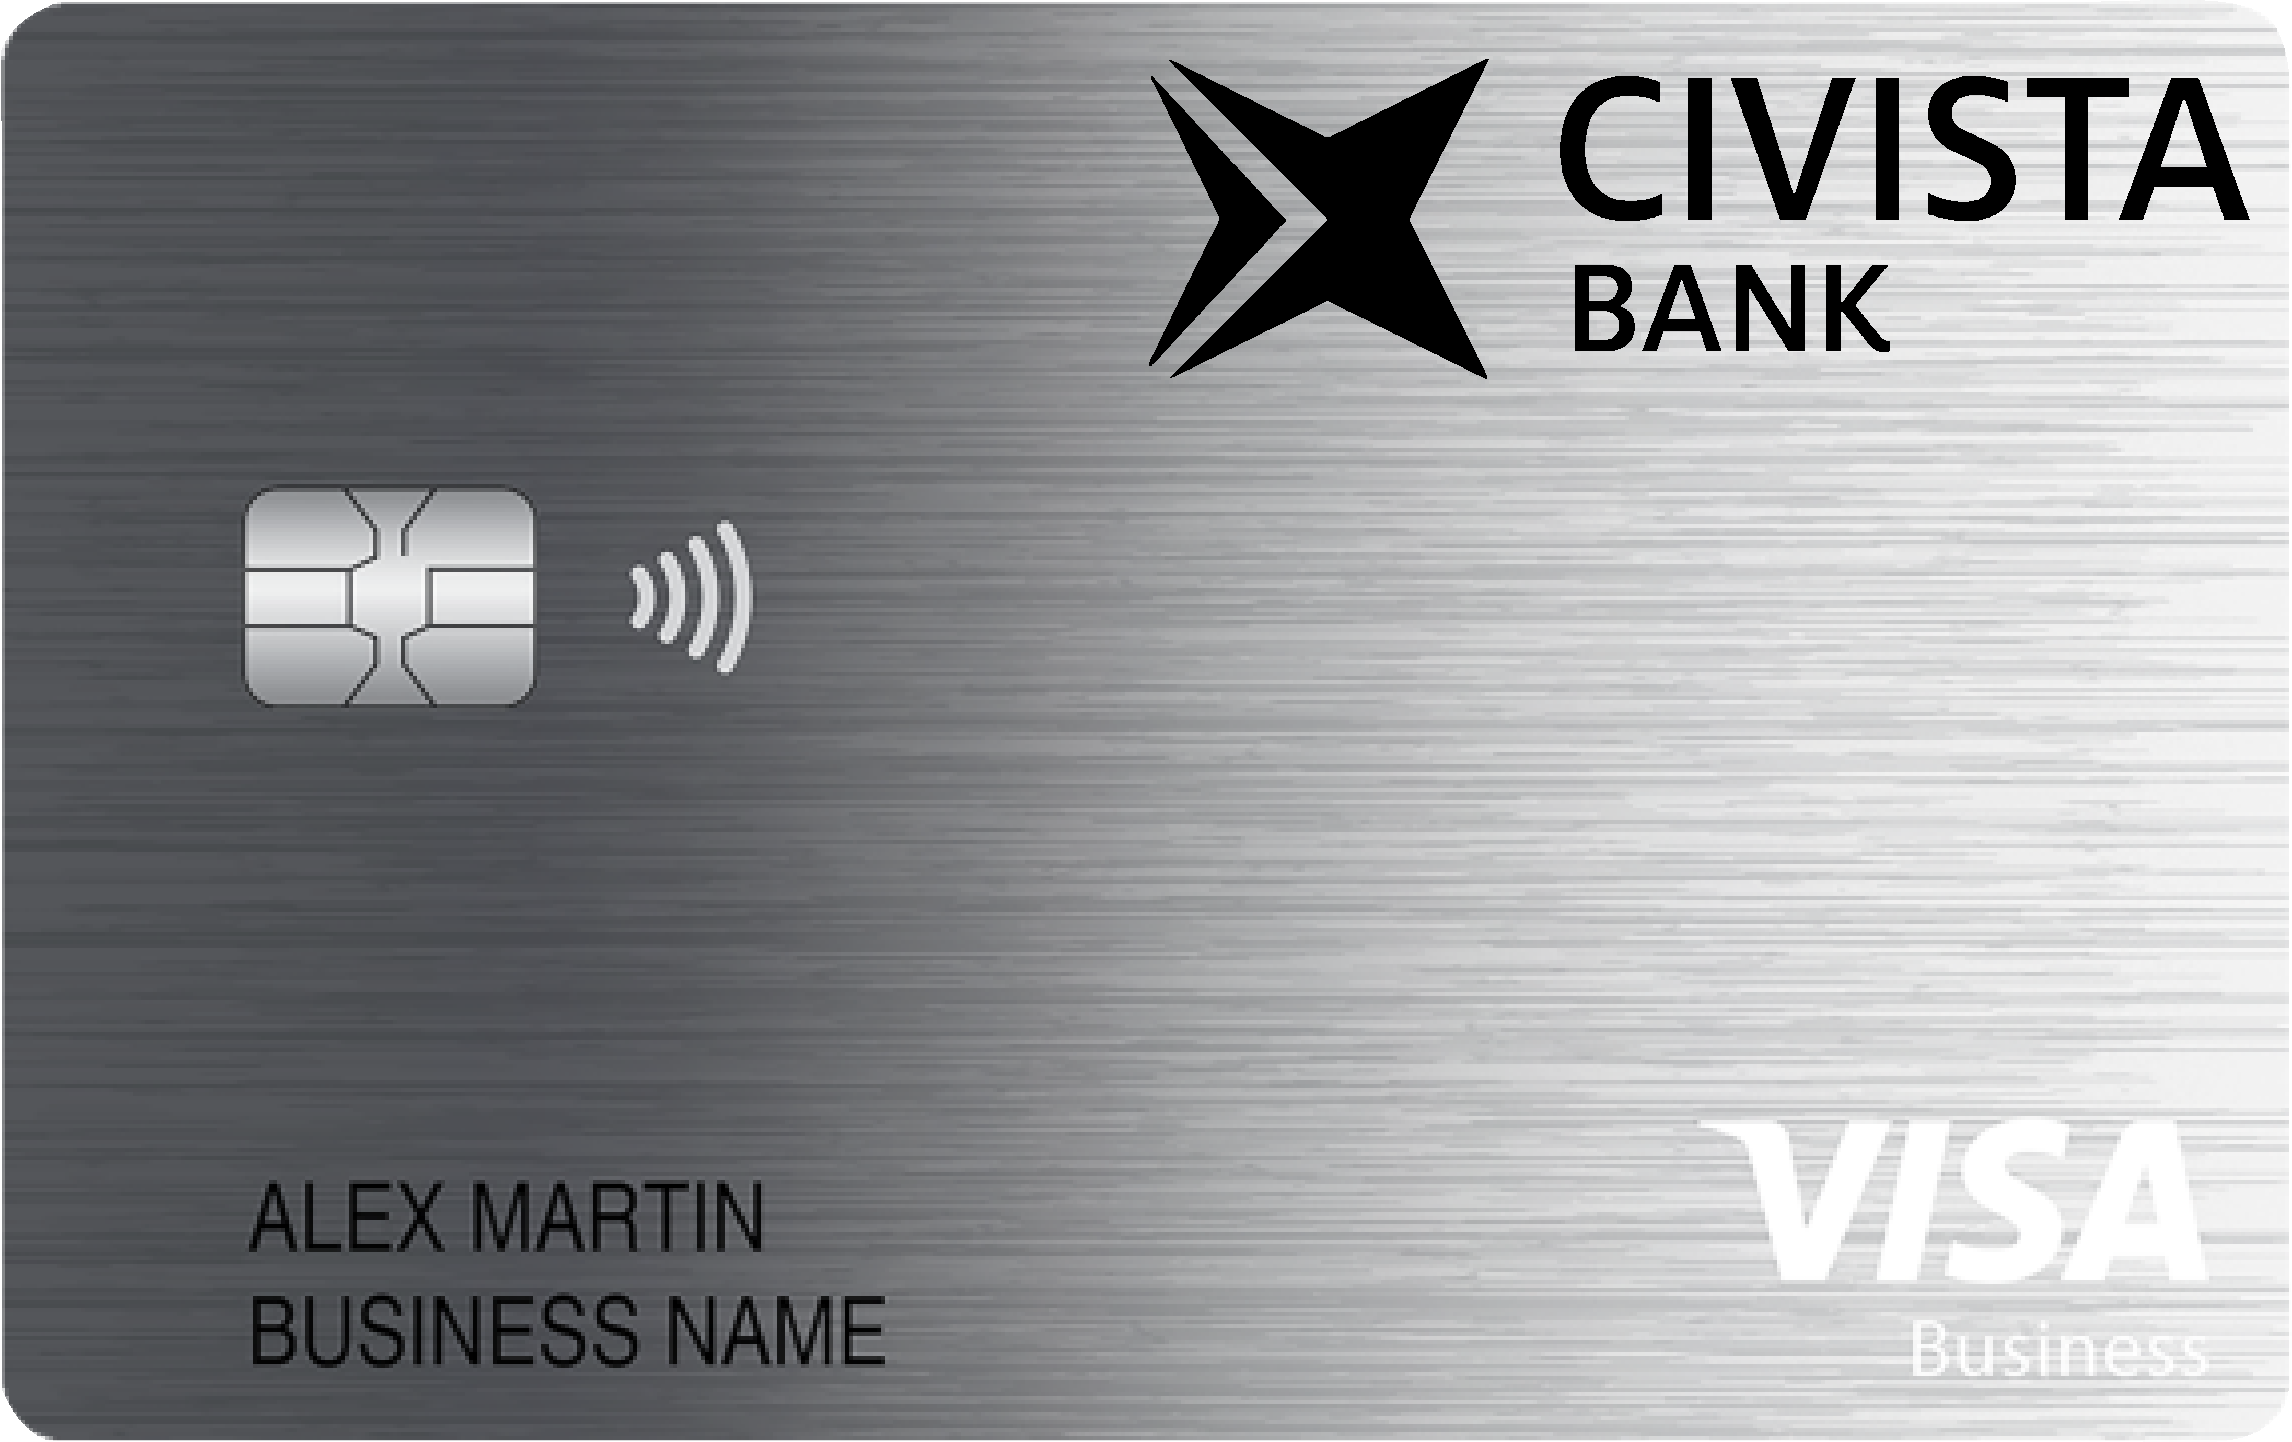 Civista Bank Business Cash Preferred